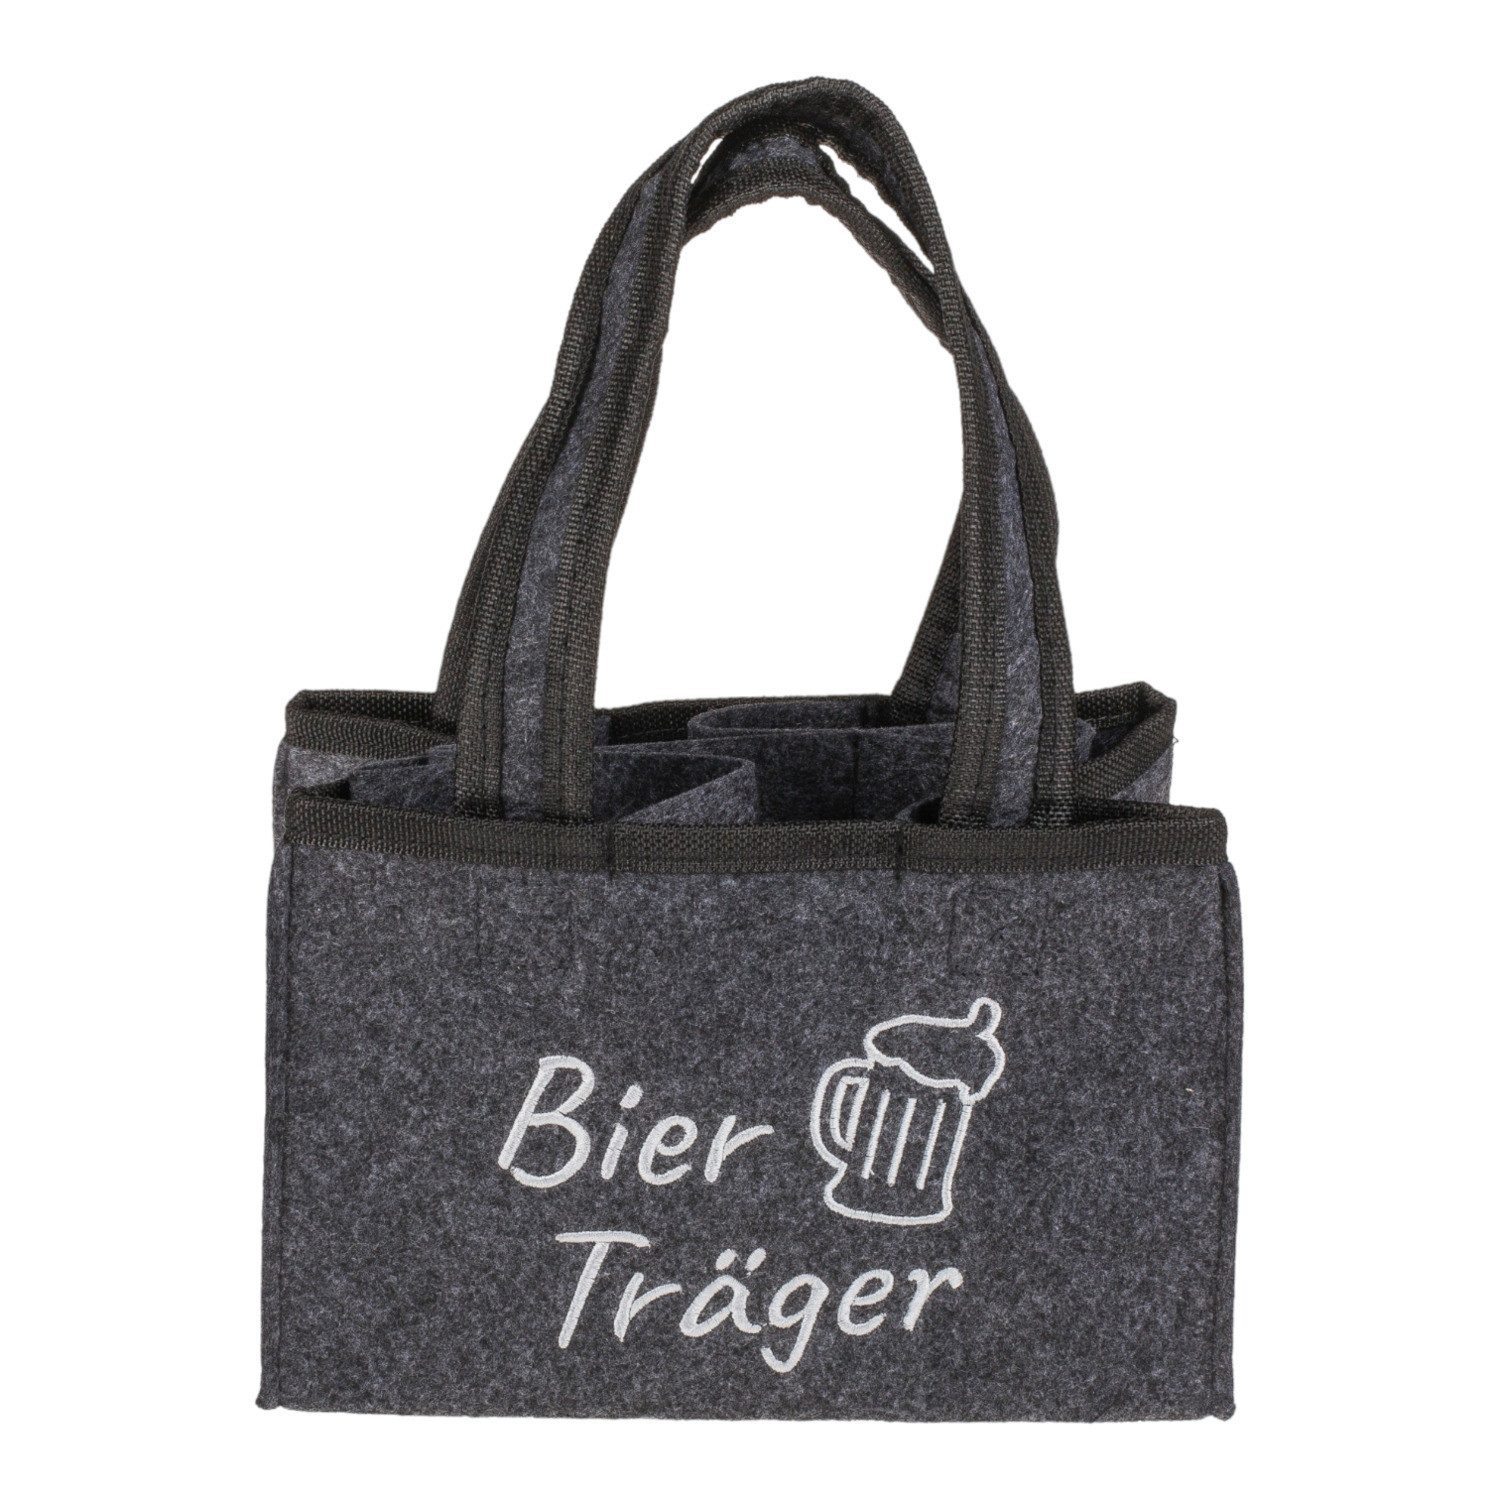 Out of the Blue Tragetasche Bier-Träger Getränke Tragetasche für 6 Flaschen